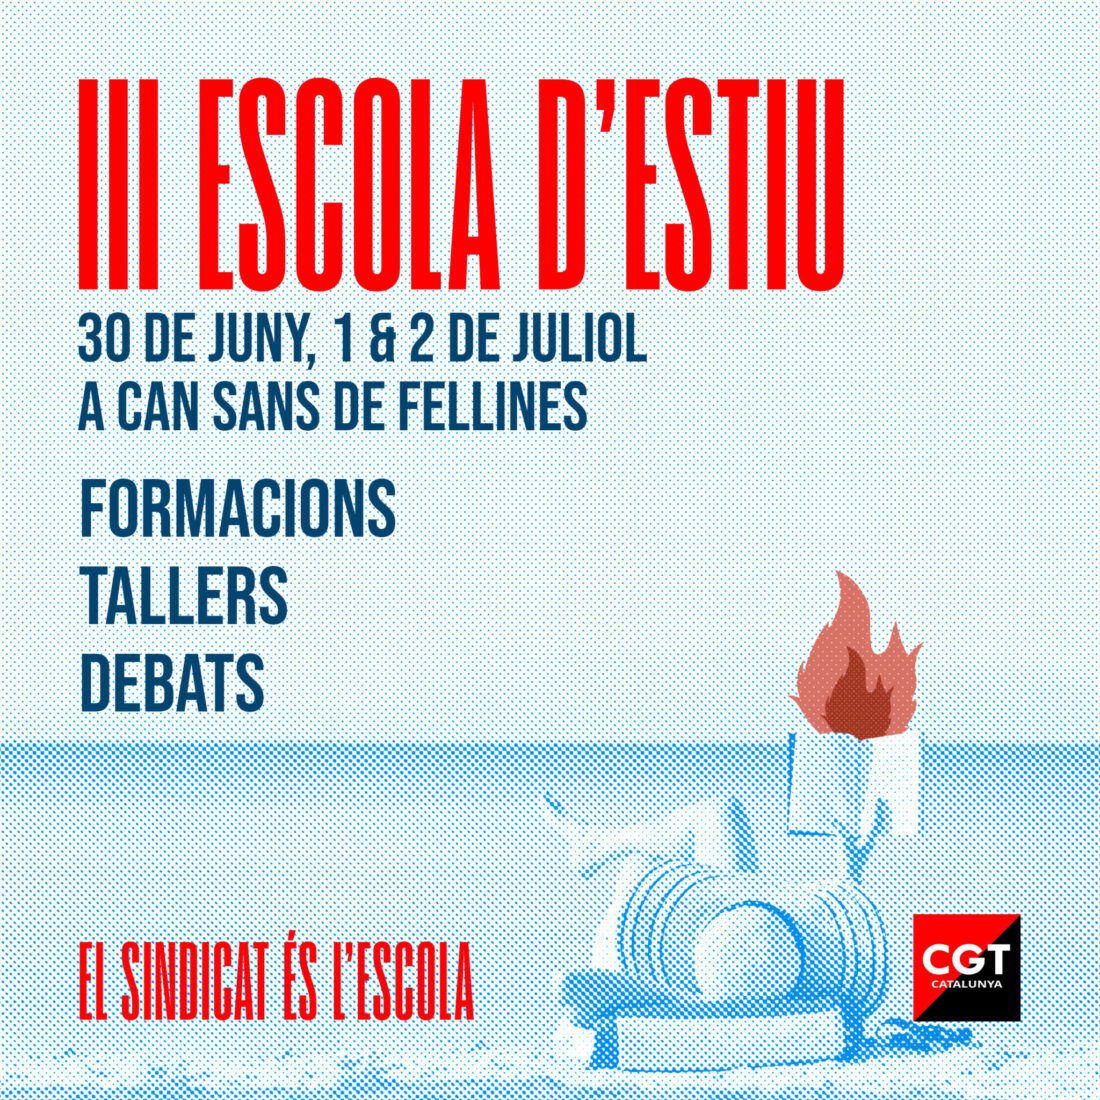 III Escuela de Verano CGT Catalunya 30 de junio, 1 y 2 de julio